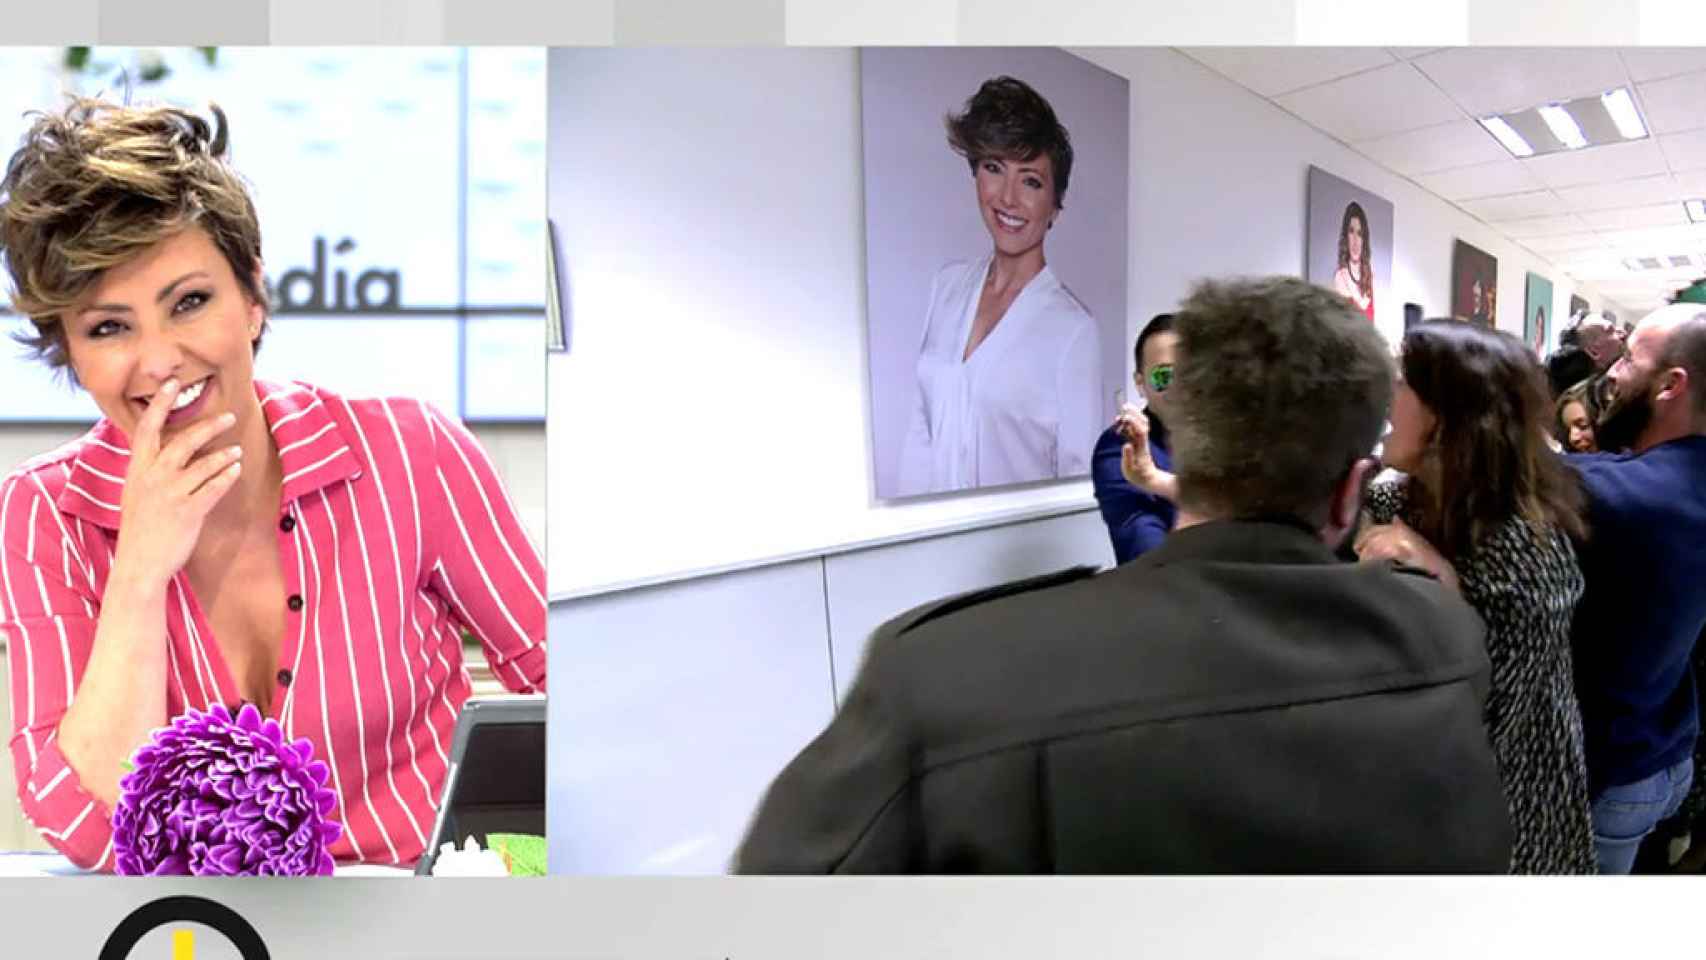 Sonsoles ya cuenta con su propia foto en el 'Pasillo de la fama' de Mediaset.